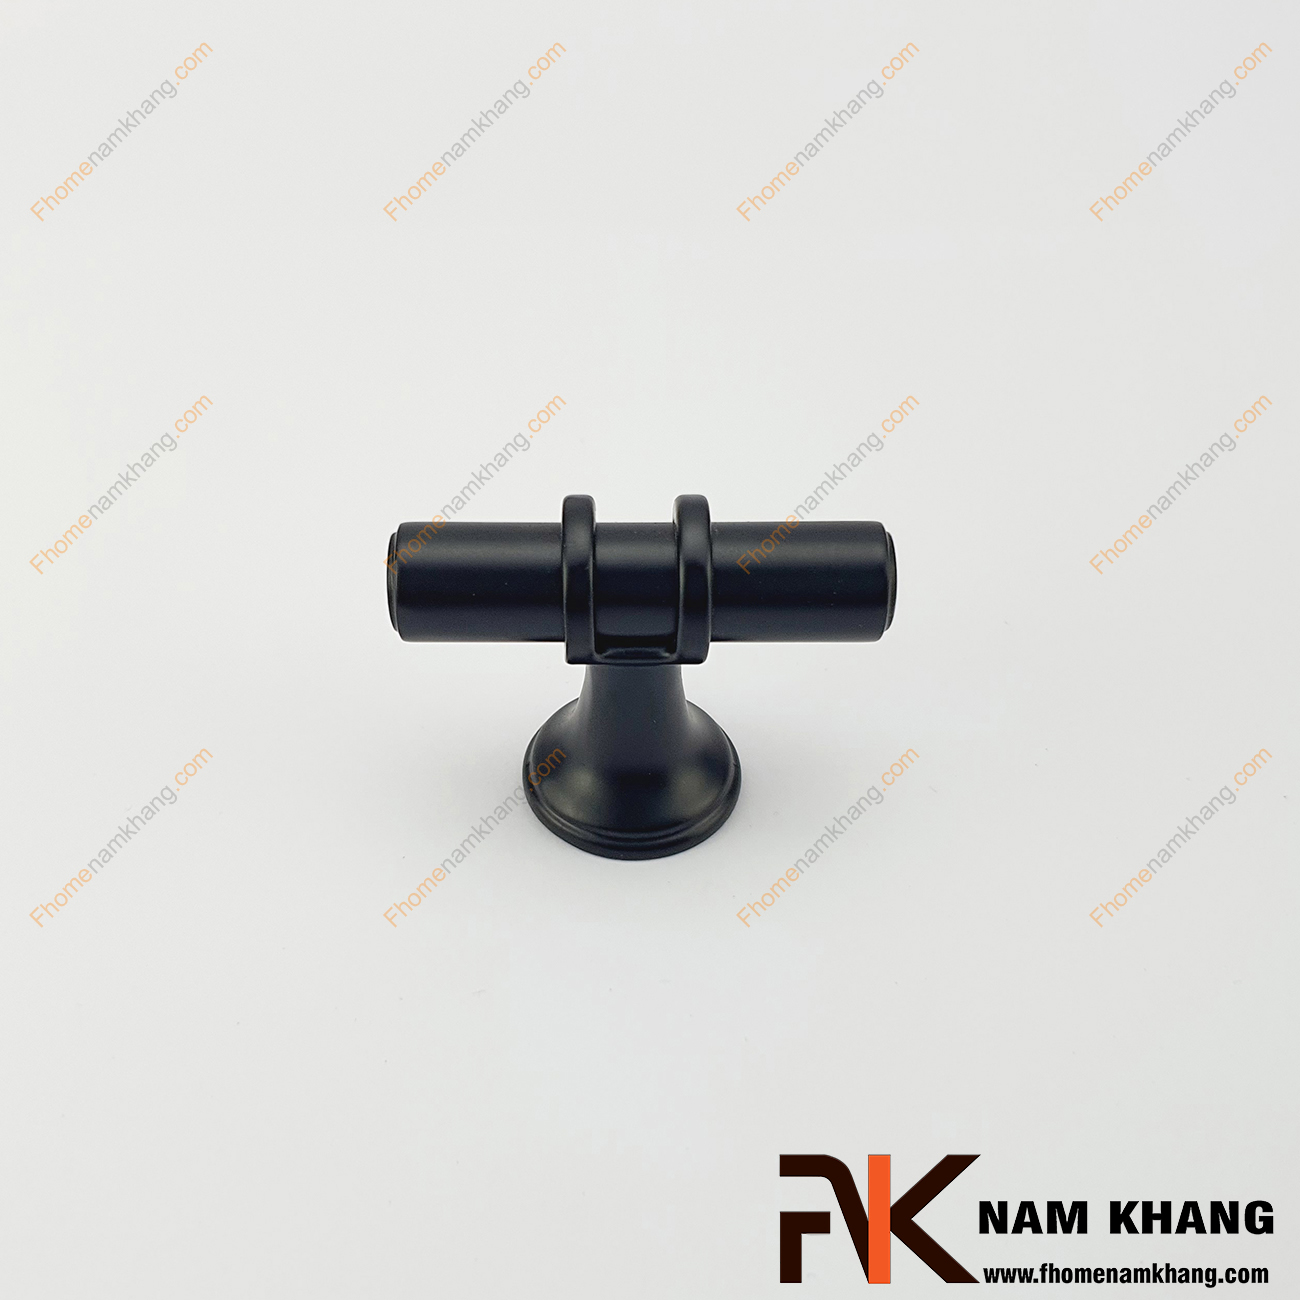 Núm cửa tủ dạng chữ T màu đen mờ NK207-DM là sản phẩm núm nắm tủ đặc trưng chuyên dùng cho các dòng tủ bếp, ngăn kéo, ngăn bàn, tủ nội thất.